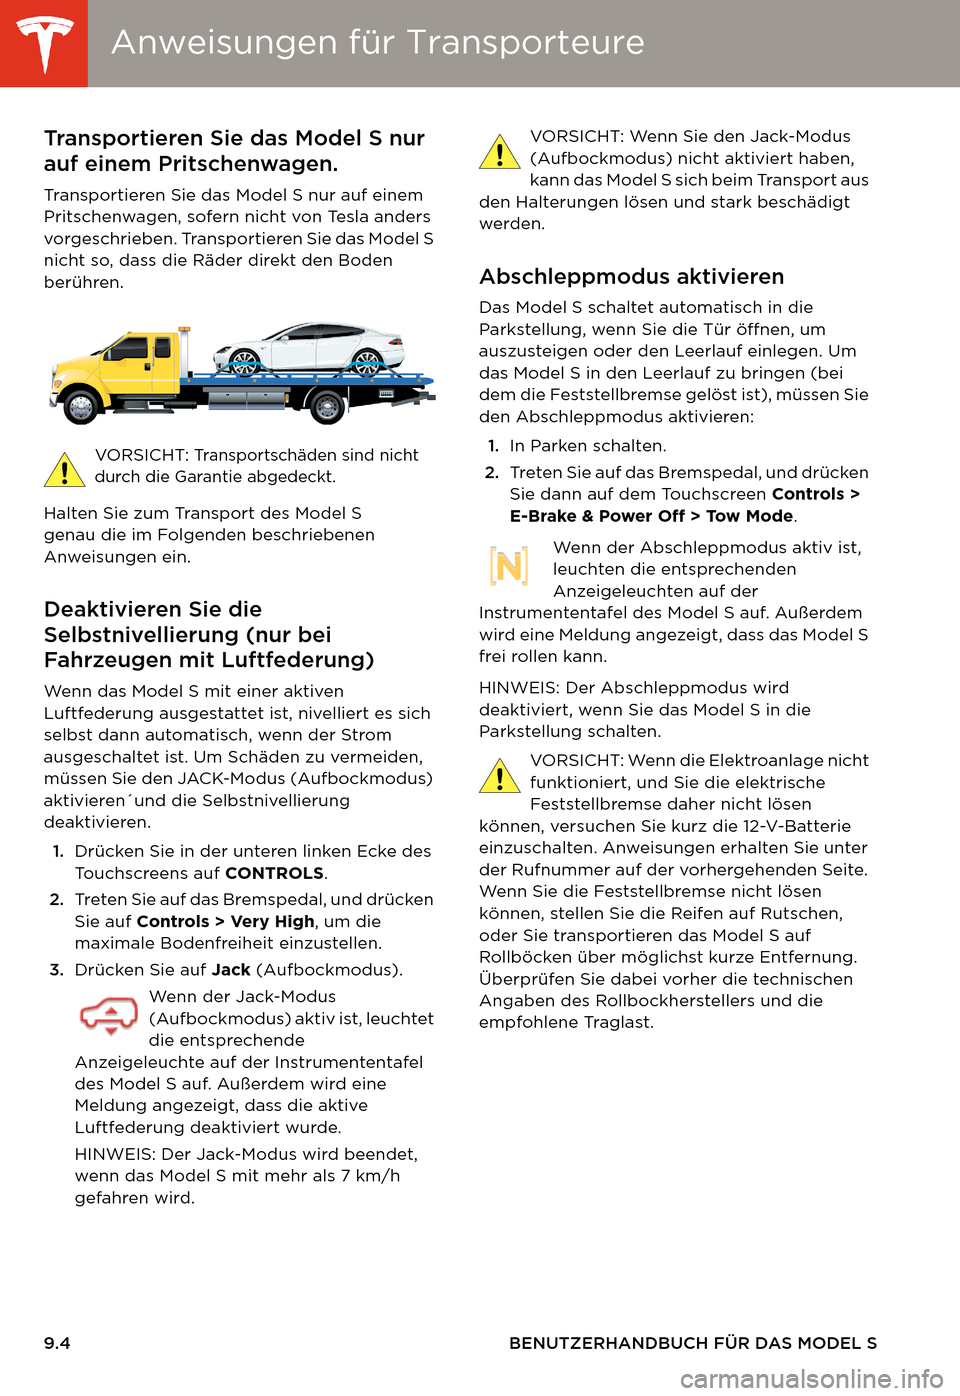 TESLA MODEL S 2014  Betriebsanleitung (in German) Anweisungen für TransporteureAnweisungen für Transporteure
9.4 BENUTZERHANDBUCH FÜR DAS MODEL S
Anweisungen für TransporteureTransportieren Sie das Model S nur 
auf einem Pritschenwagen.
Transport